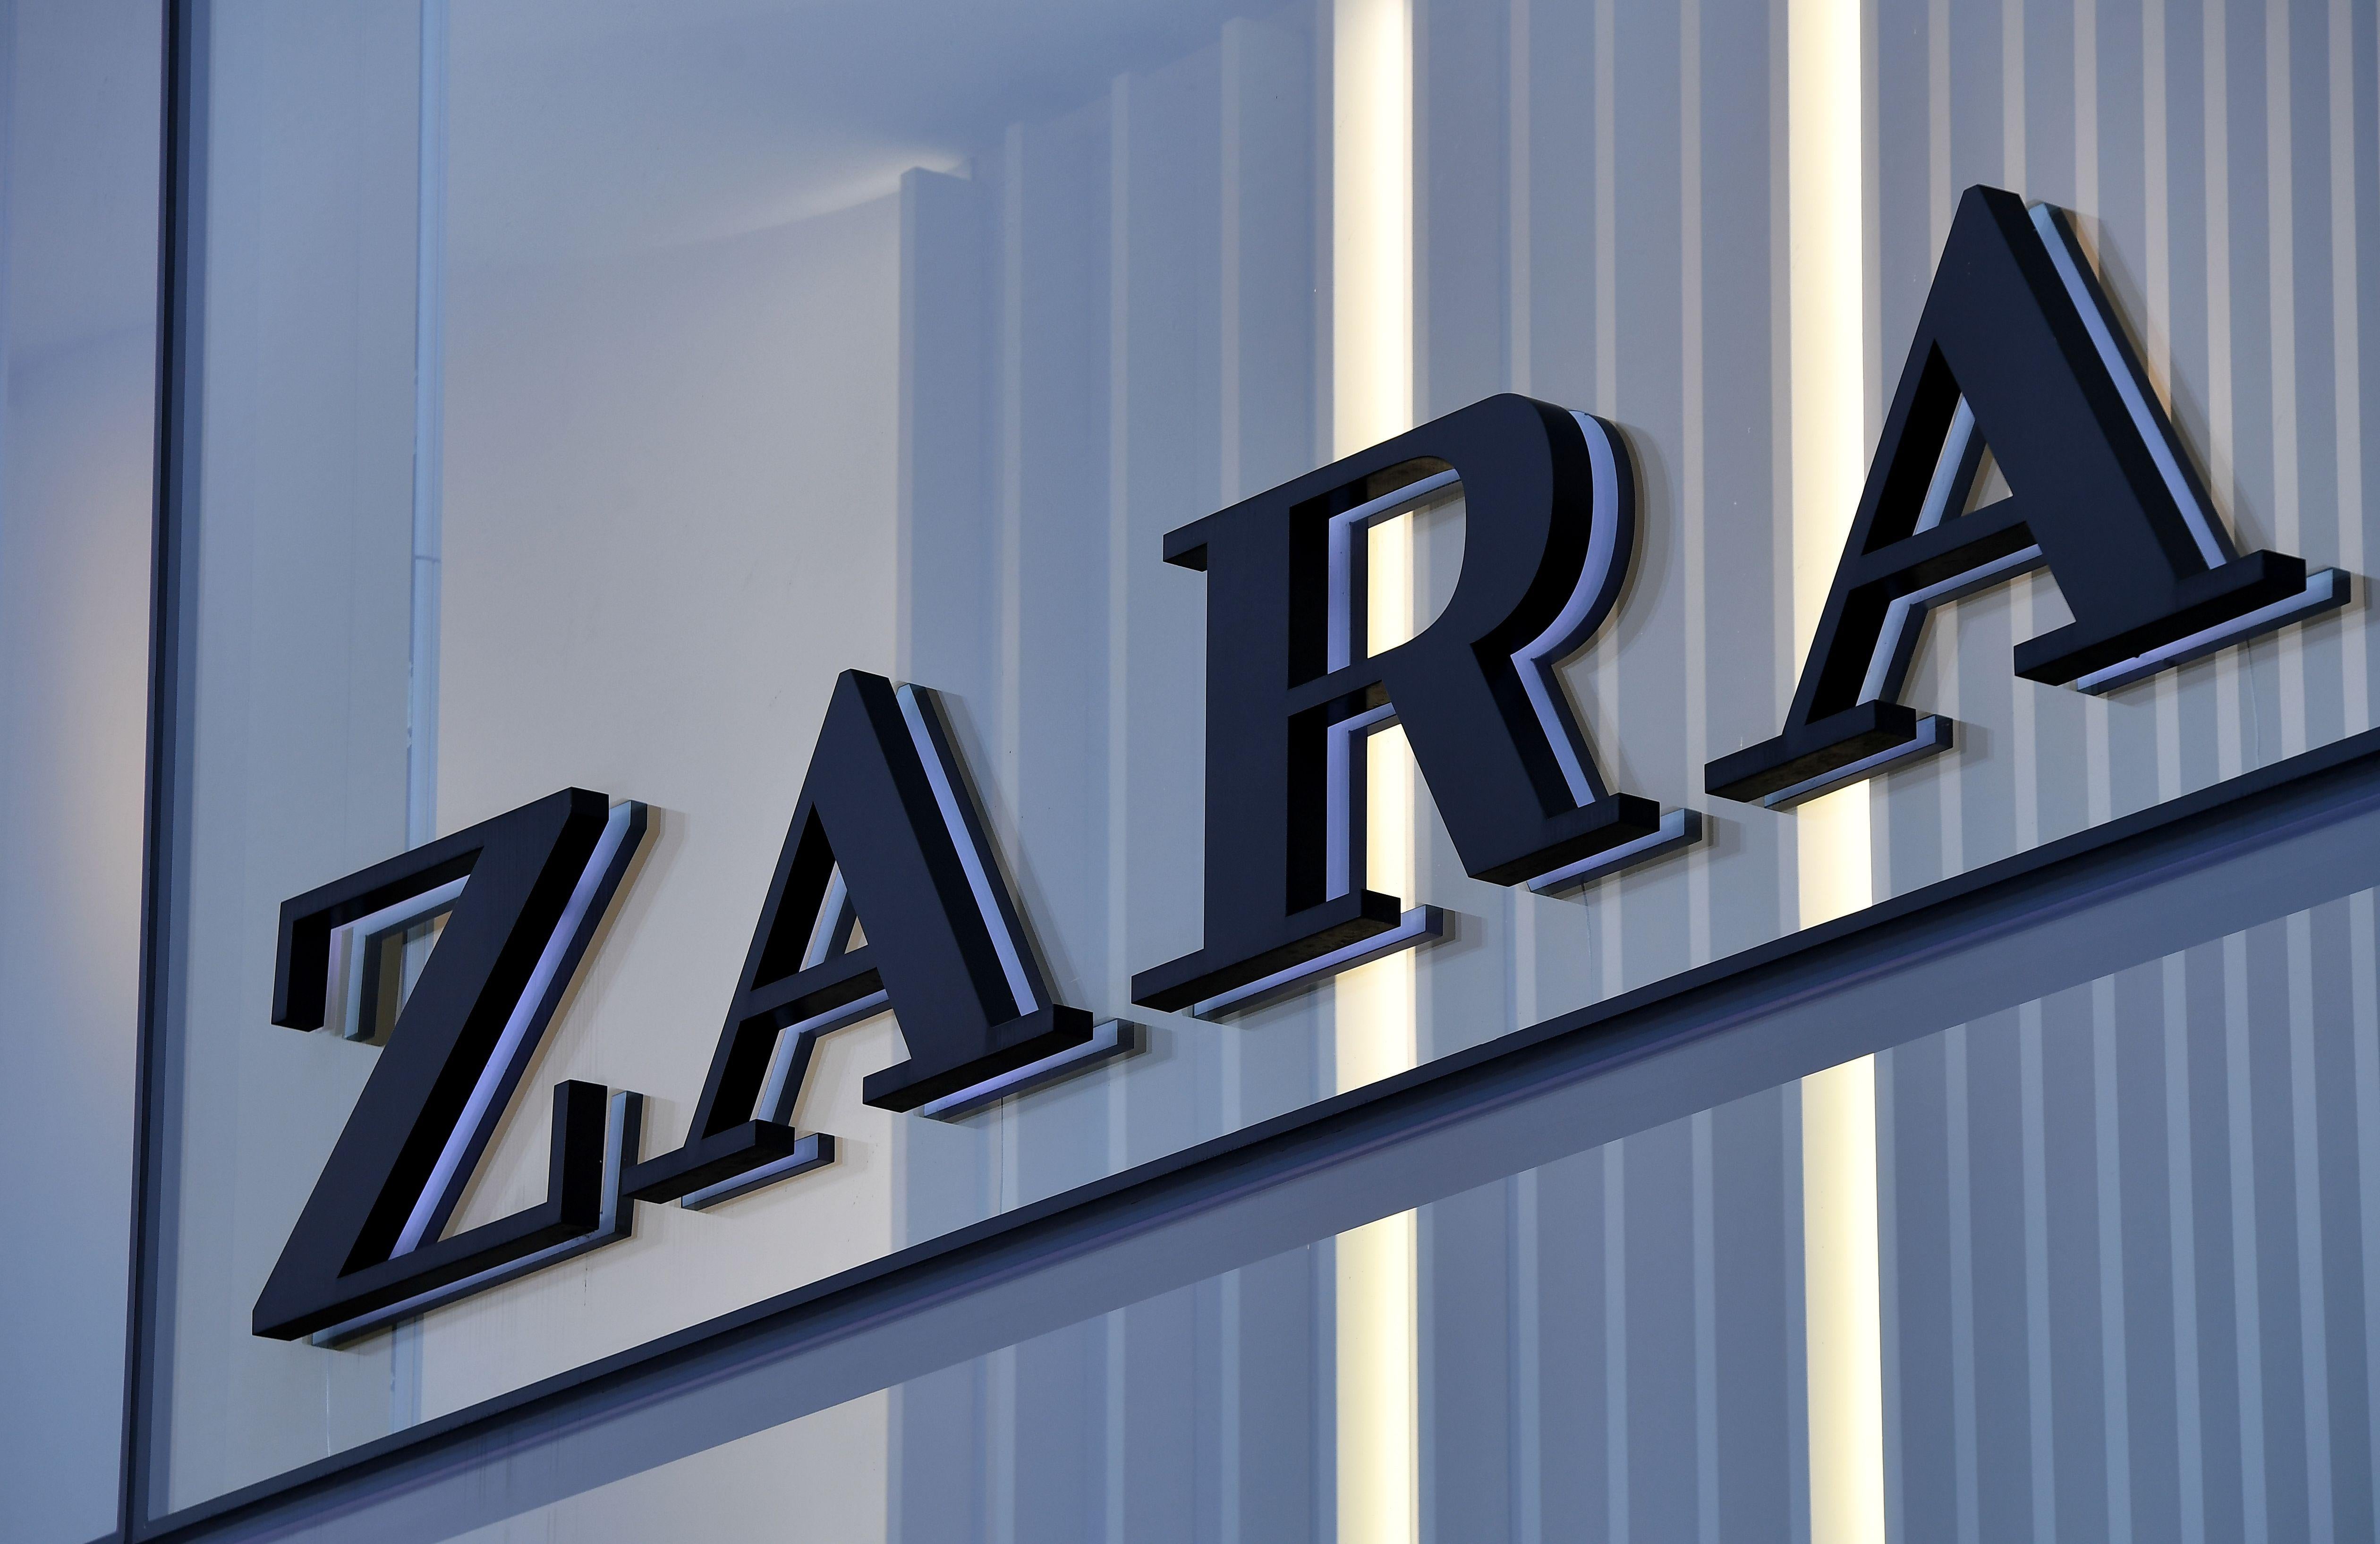 zara ethical collection